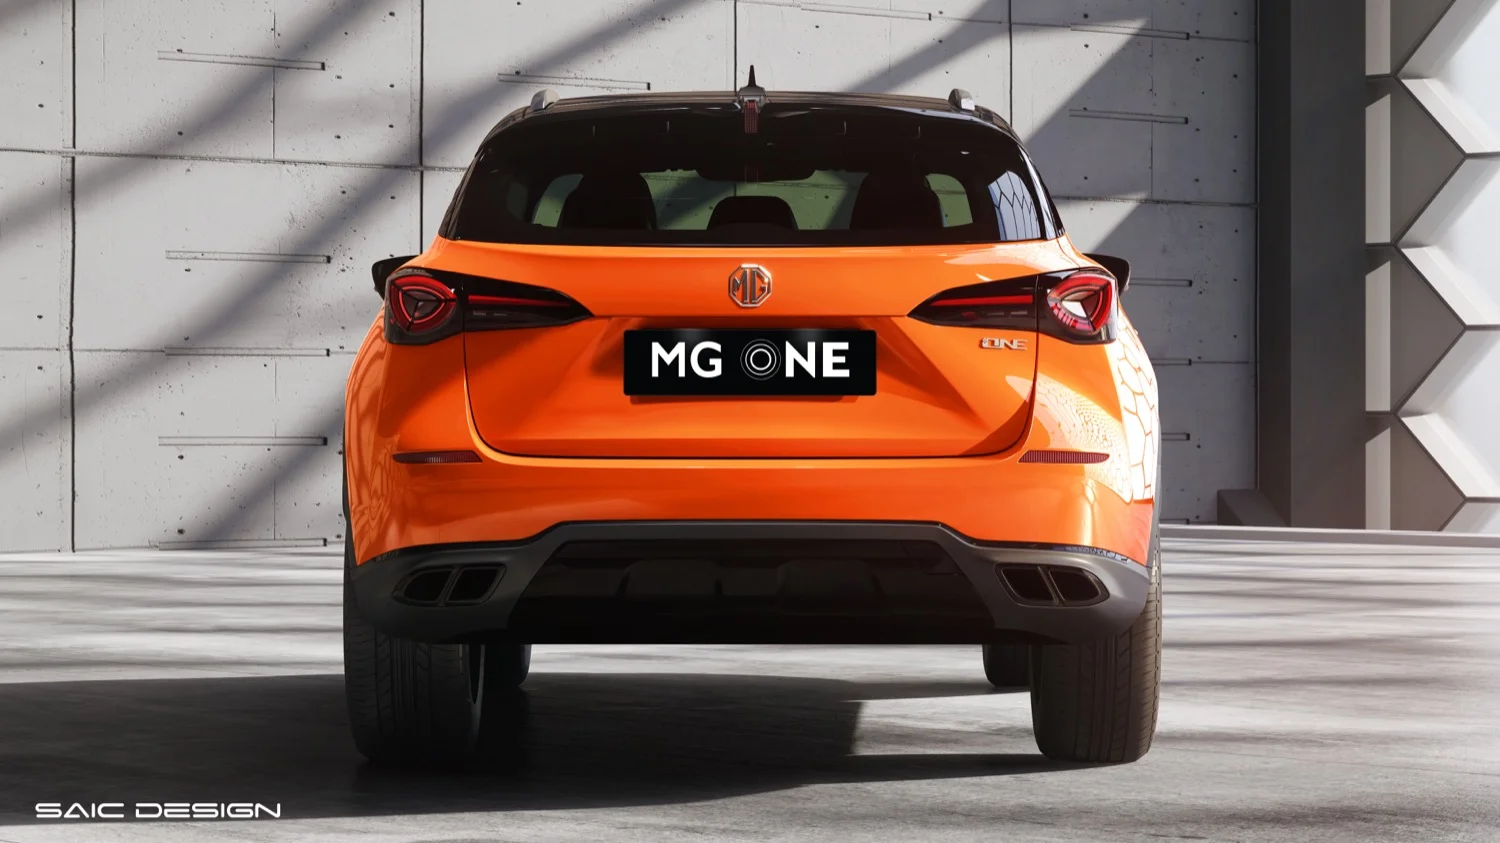 MG ONE eleva estándares en tecnología, seguridad y diseño